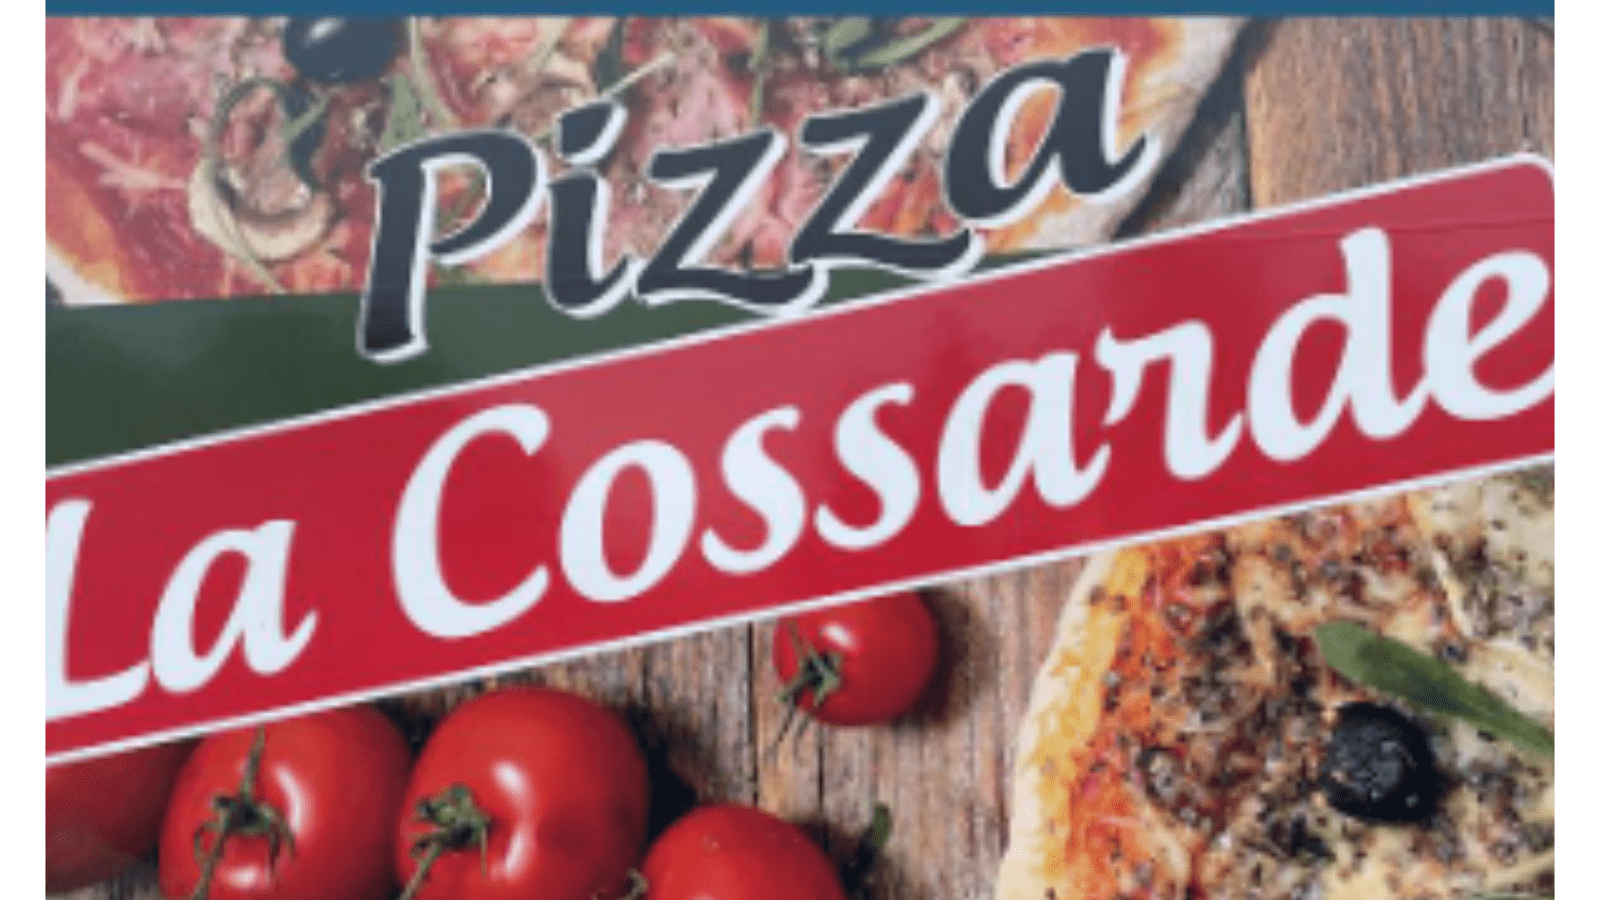 Pizza - La Cossarde 